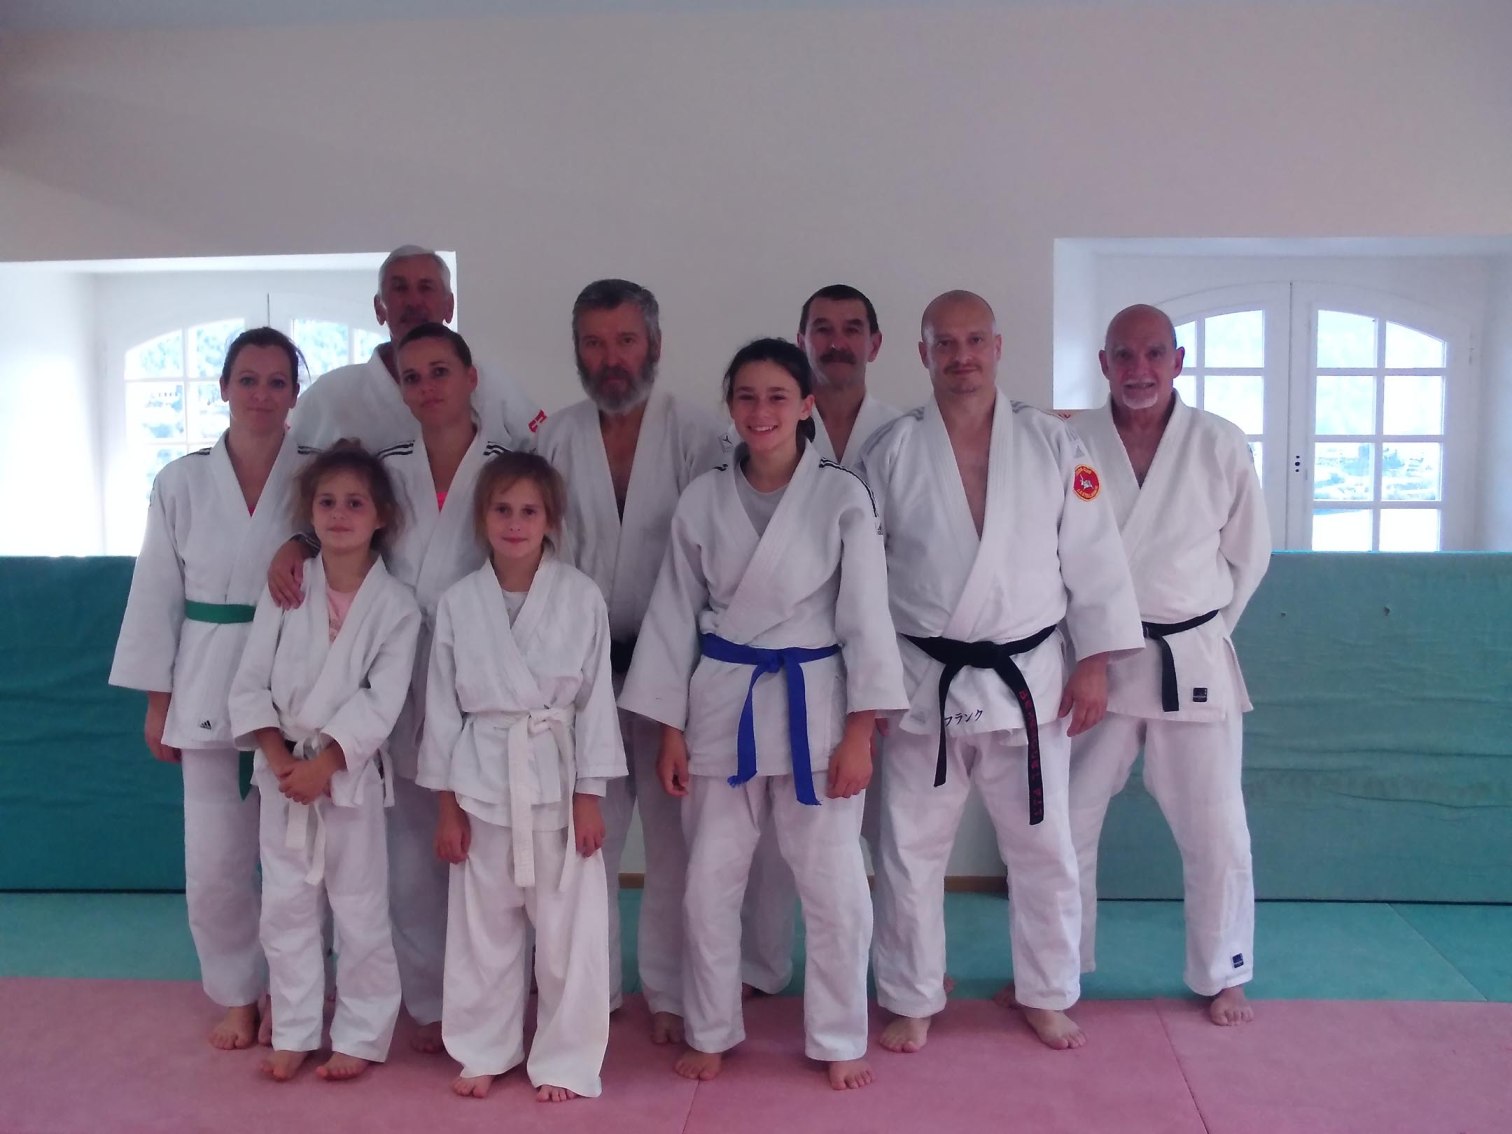 Une section du judo castellanais à la Palud-sur-Verdon